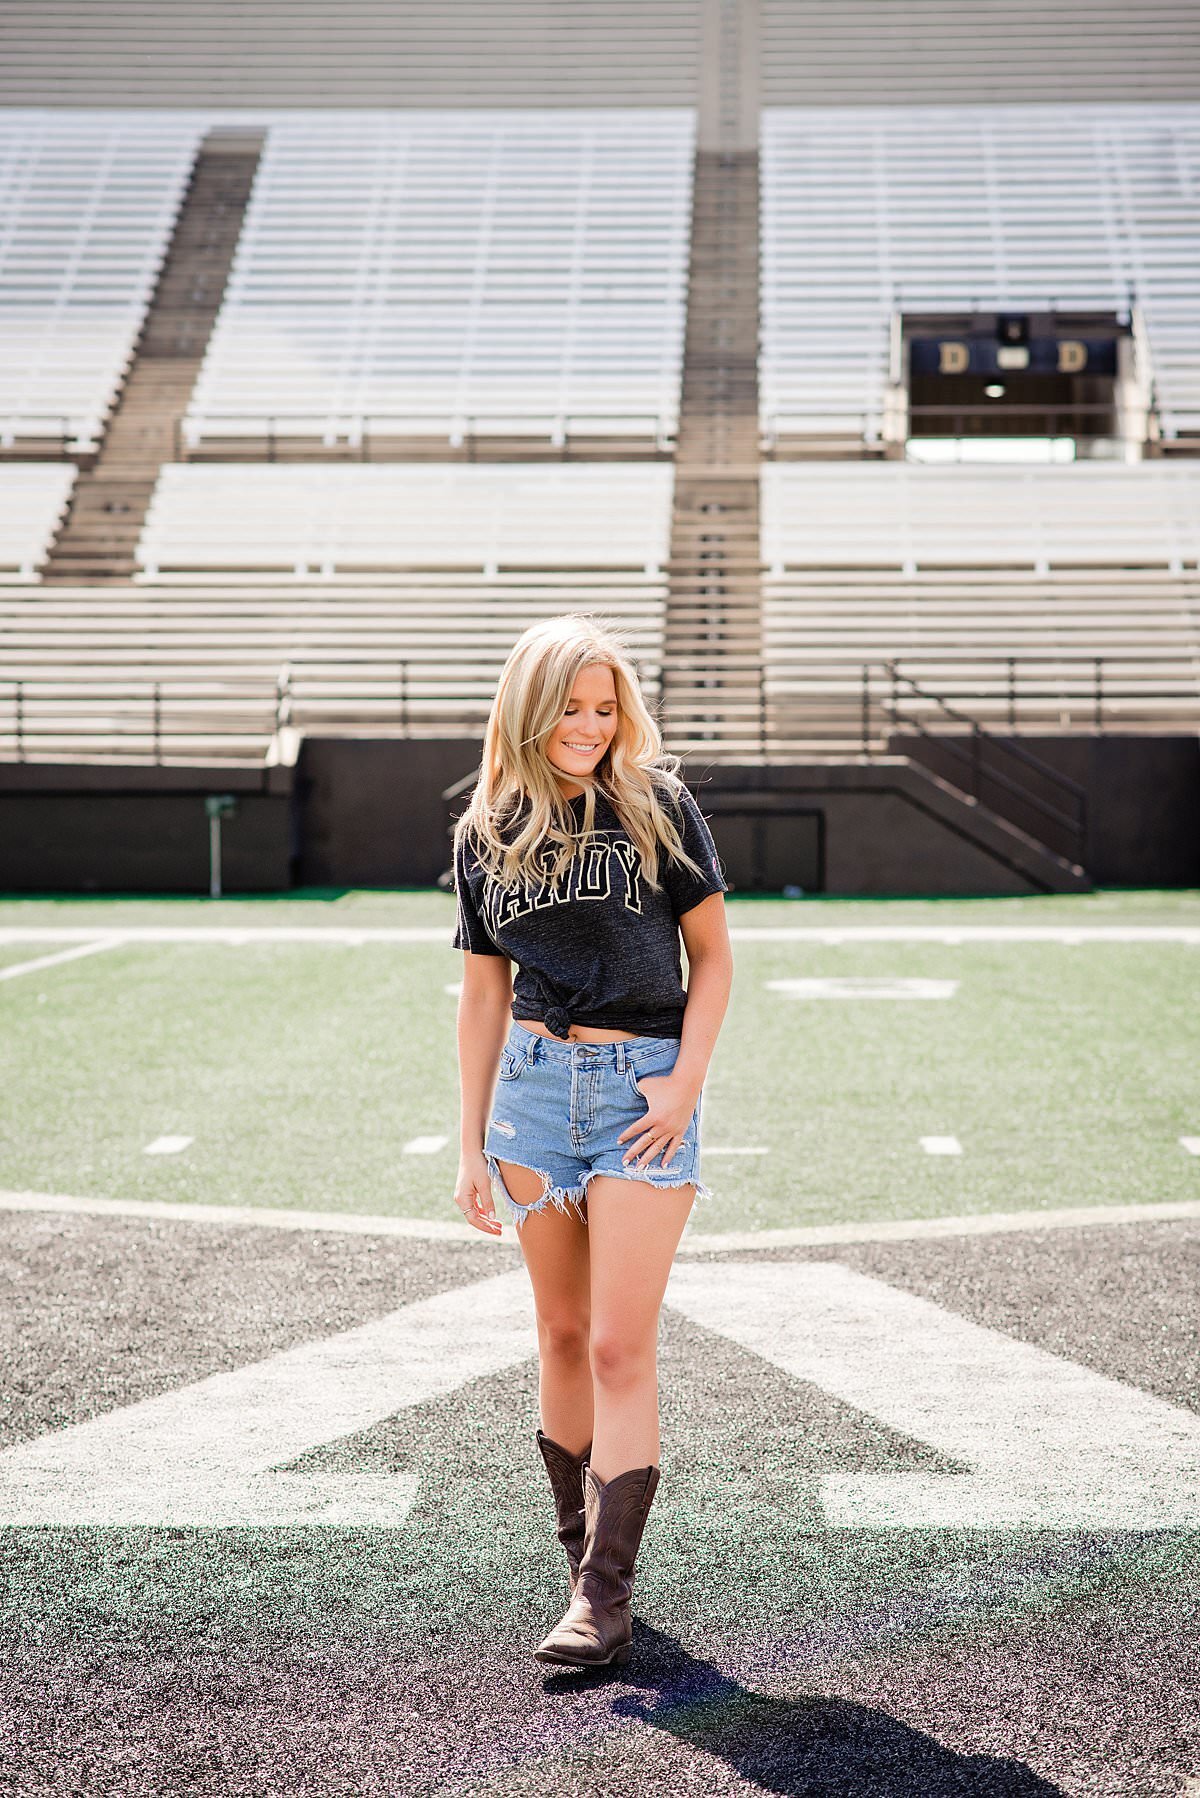 Vanderbilt Senior wearing a school shirt and jean skirt standing on football field